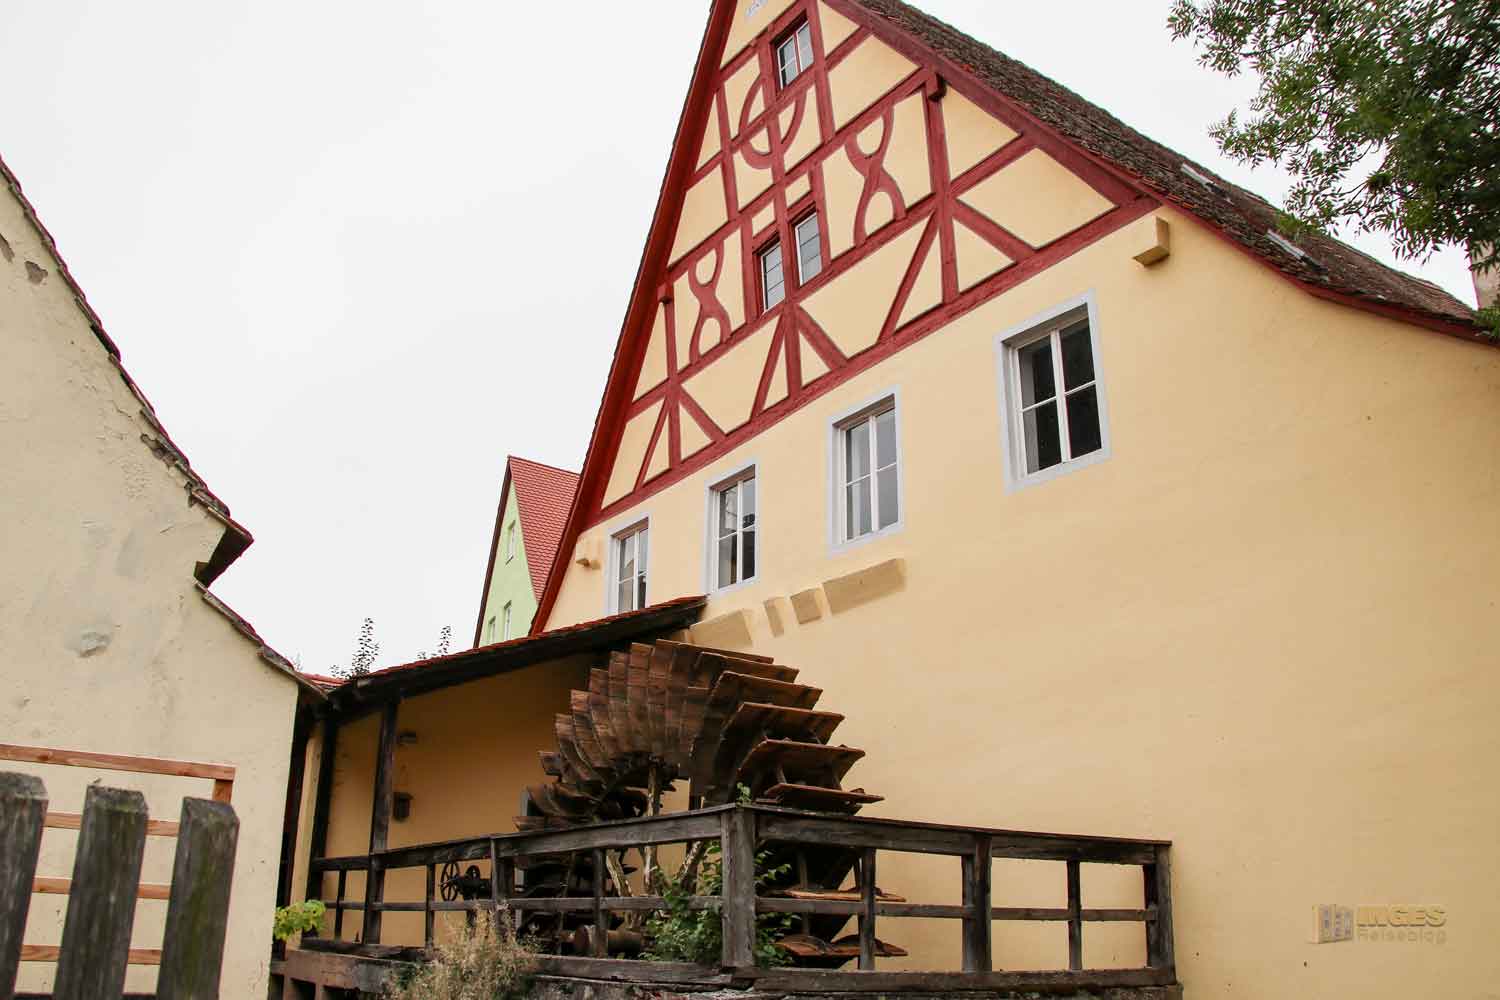 Neumühle in Nördlingen